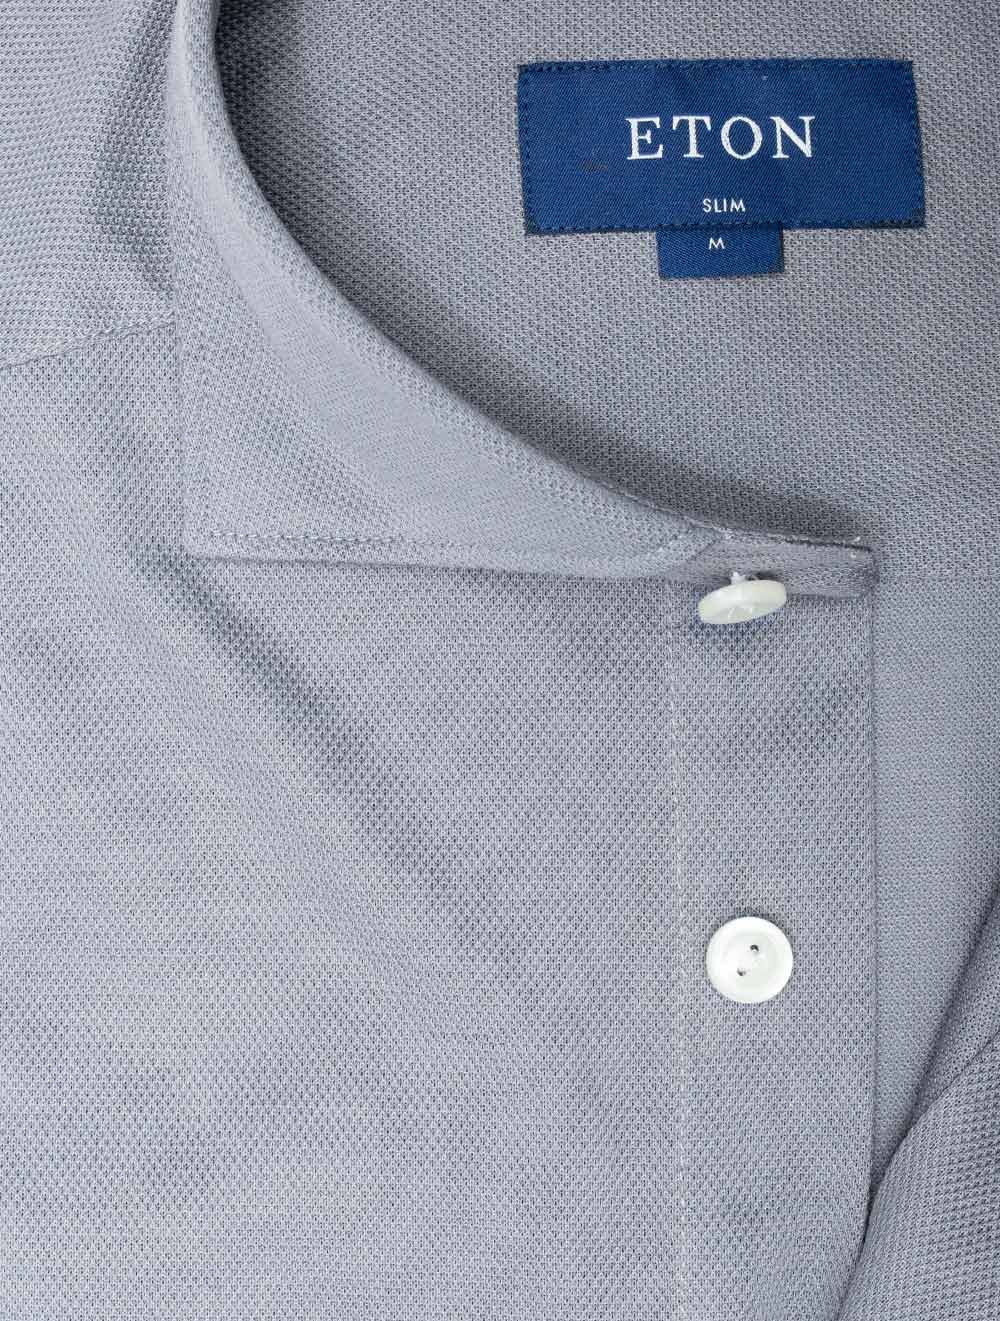 Eton Pique Jersey Shirt Grey